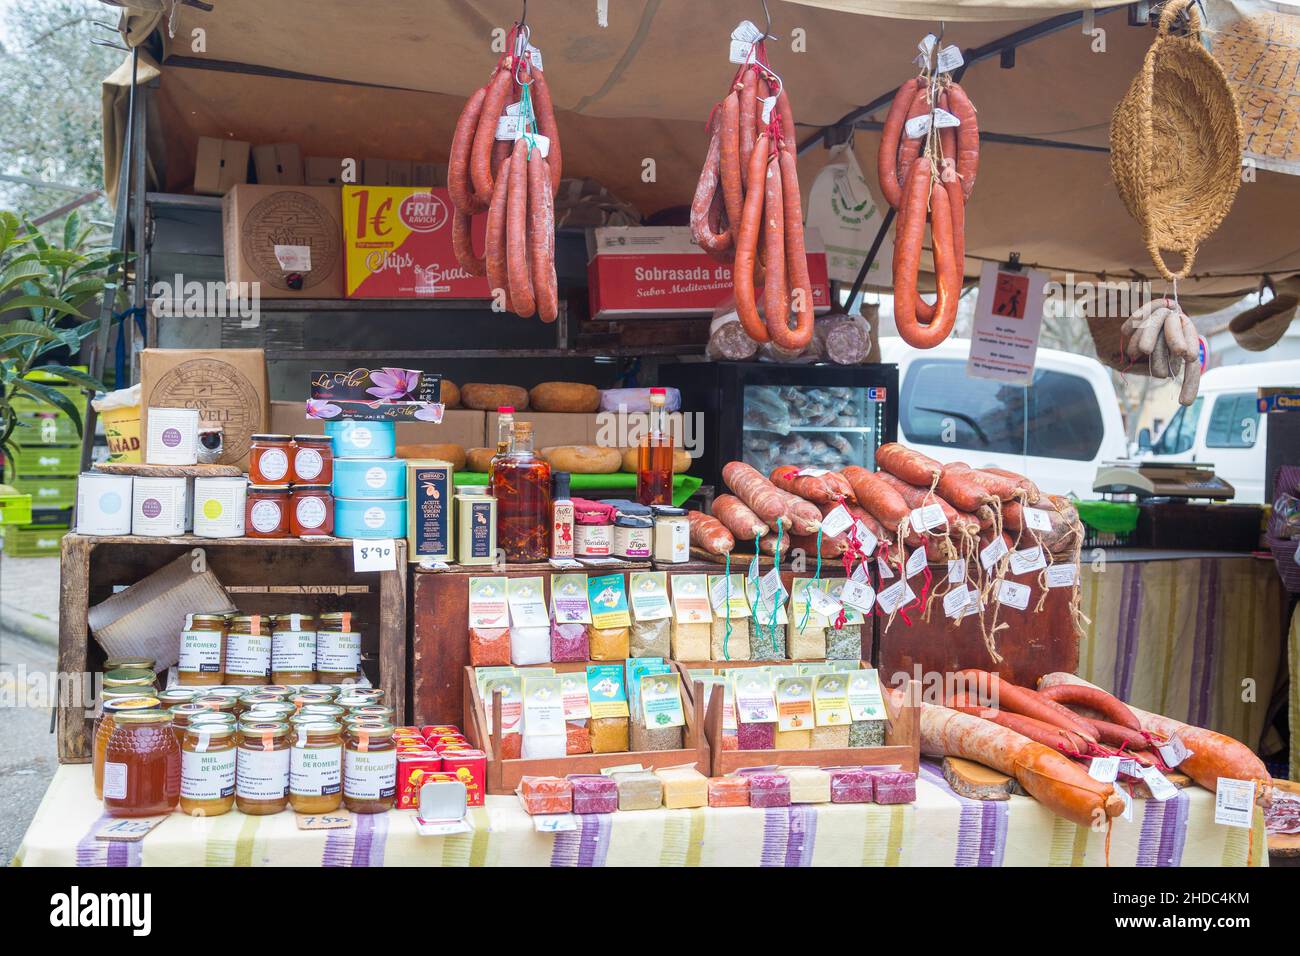 Marché avec saucisses et produits locaux, marché hebdomadaire historique, Sineu, Majorque, Espagne Banque D'Images